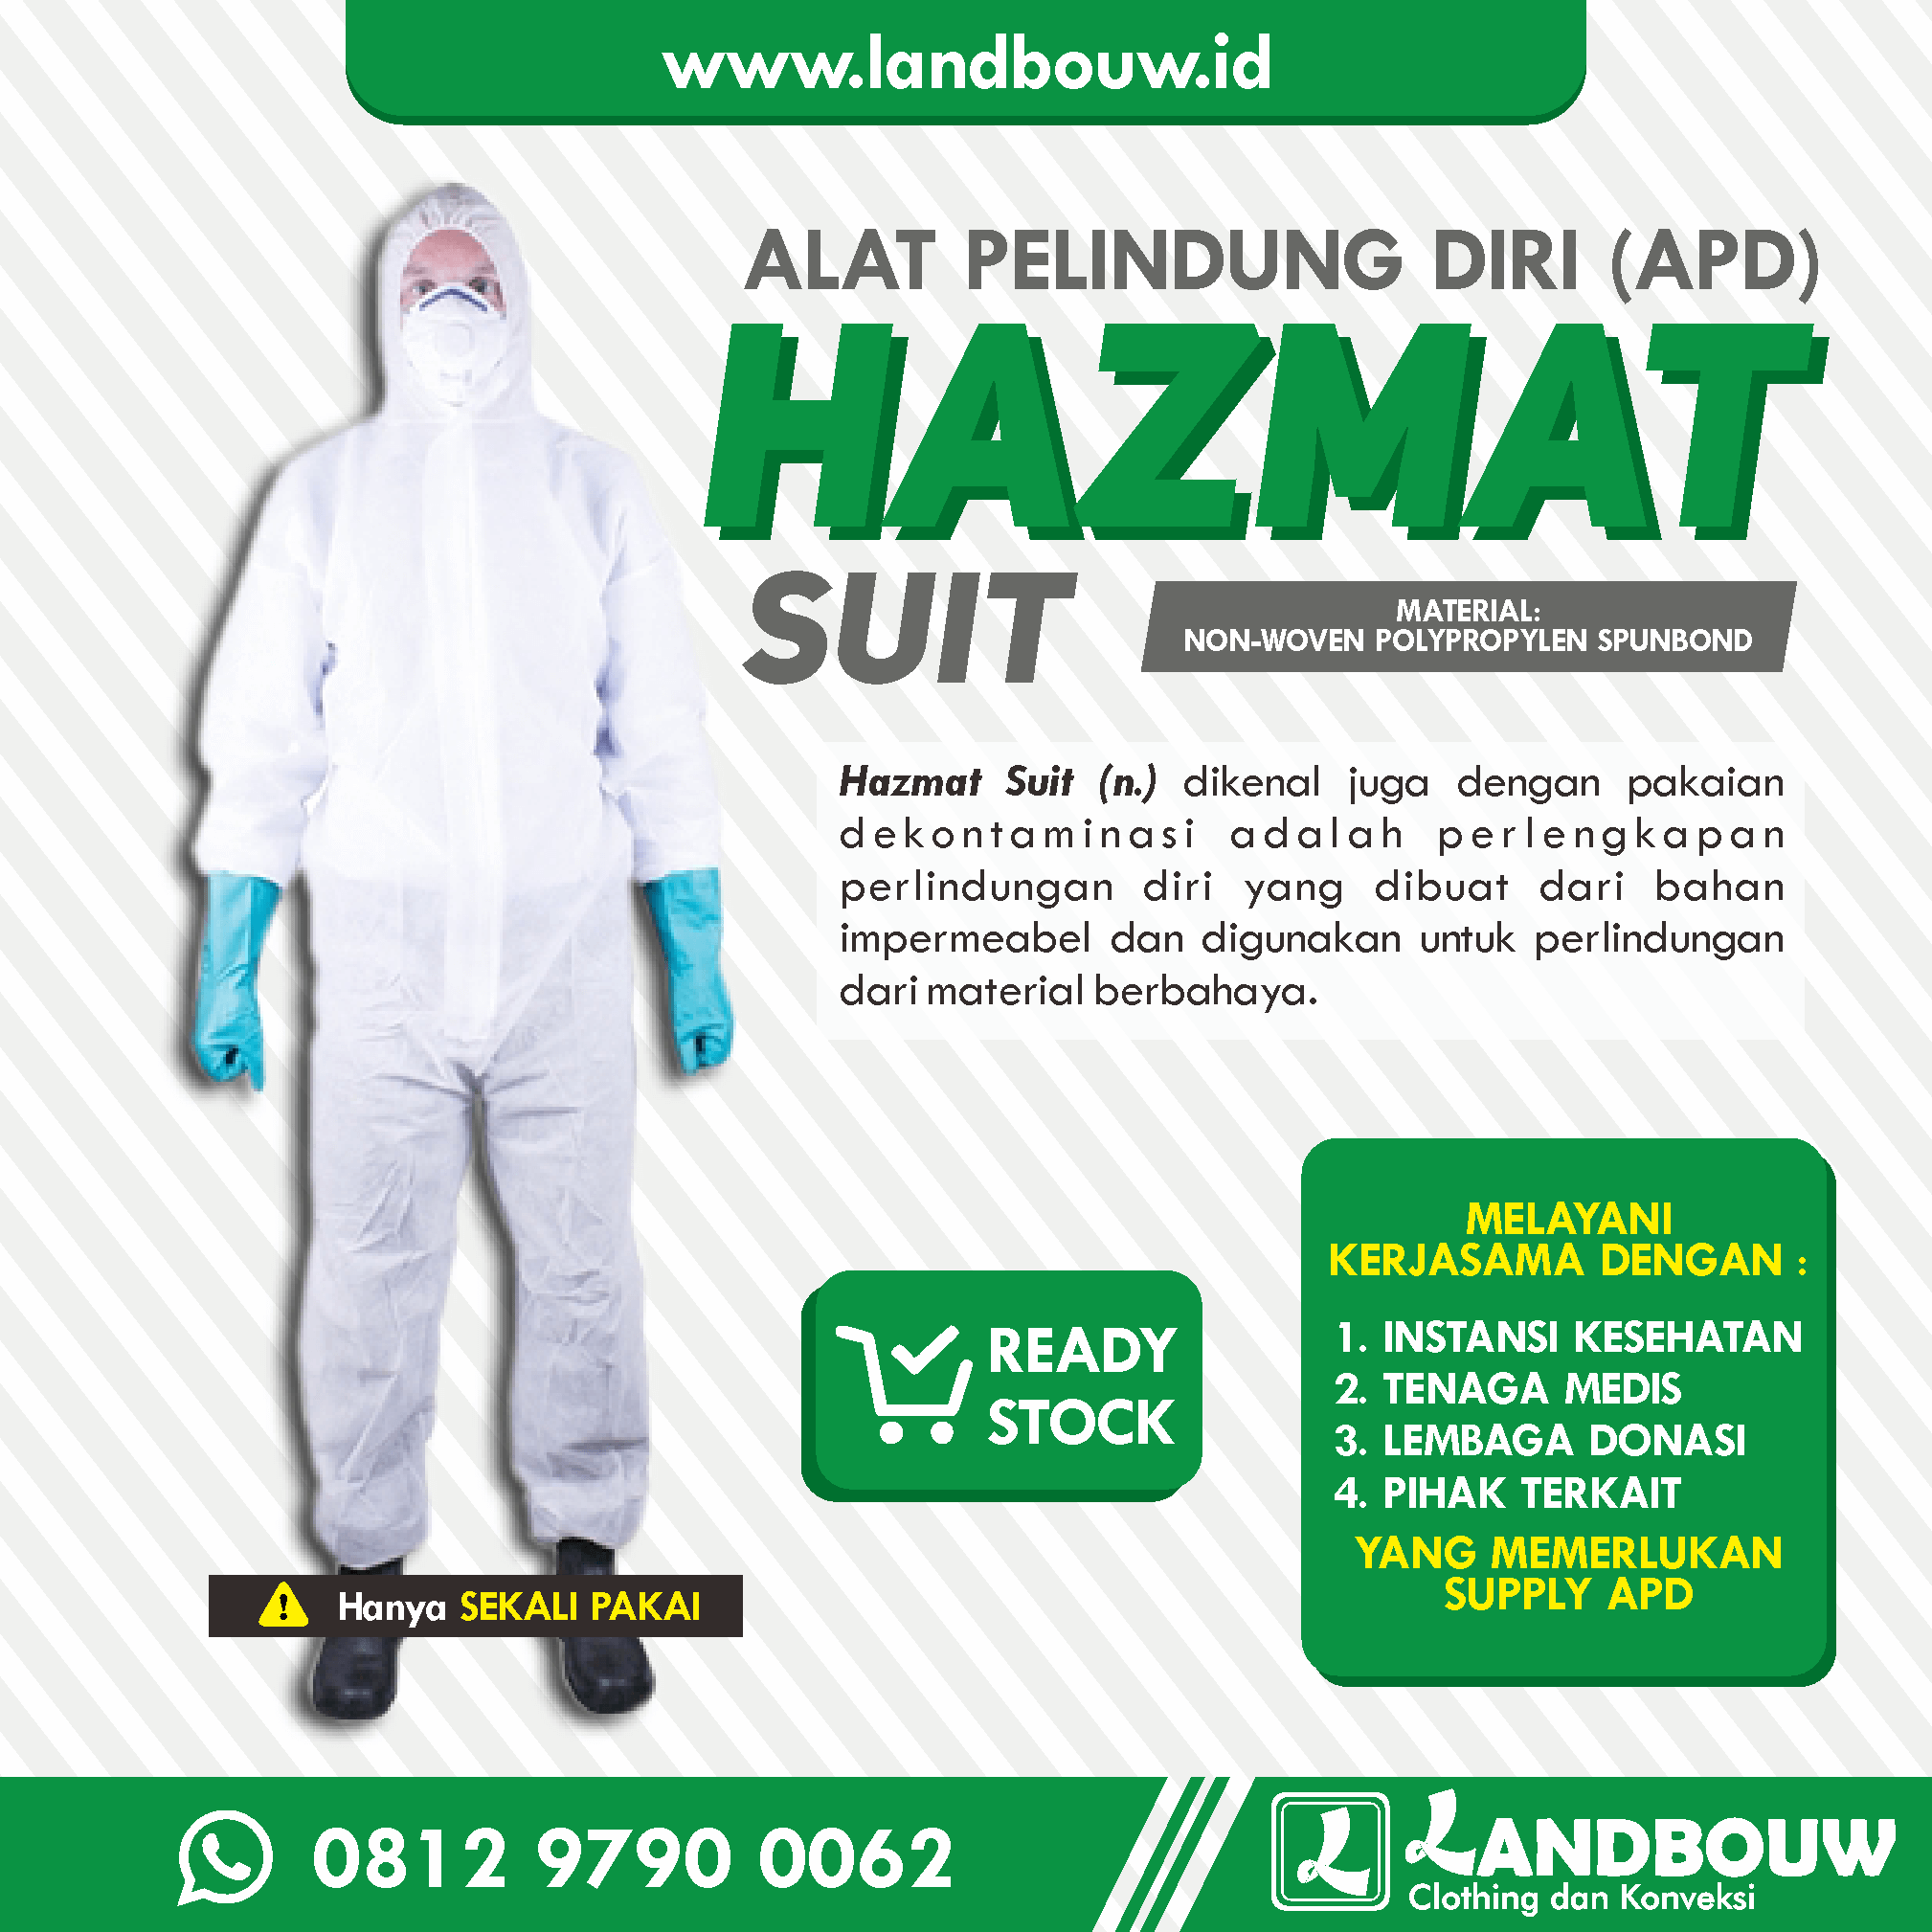 Nyari Supplier Pakaian APD Hazmat Suit? Beli Di Landbouw Konveksi Segera di NTB